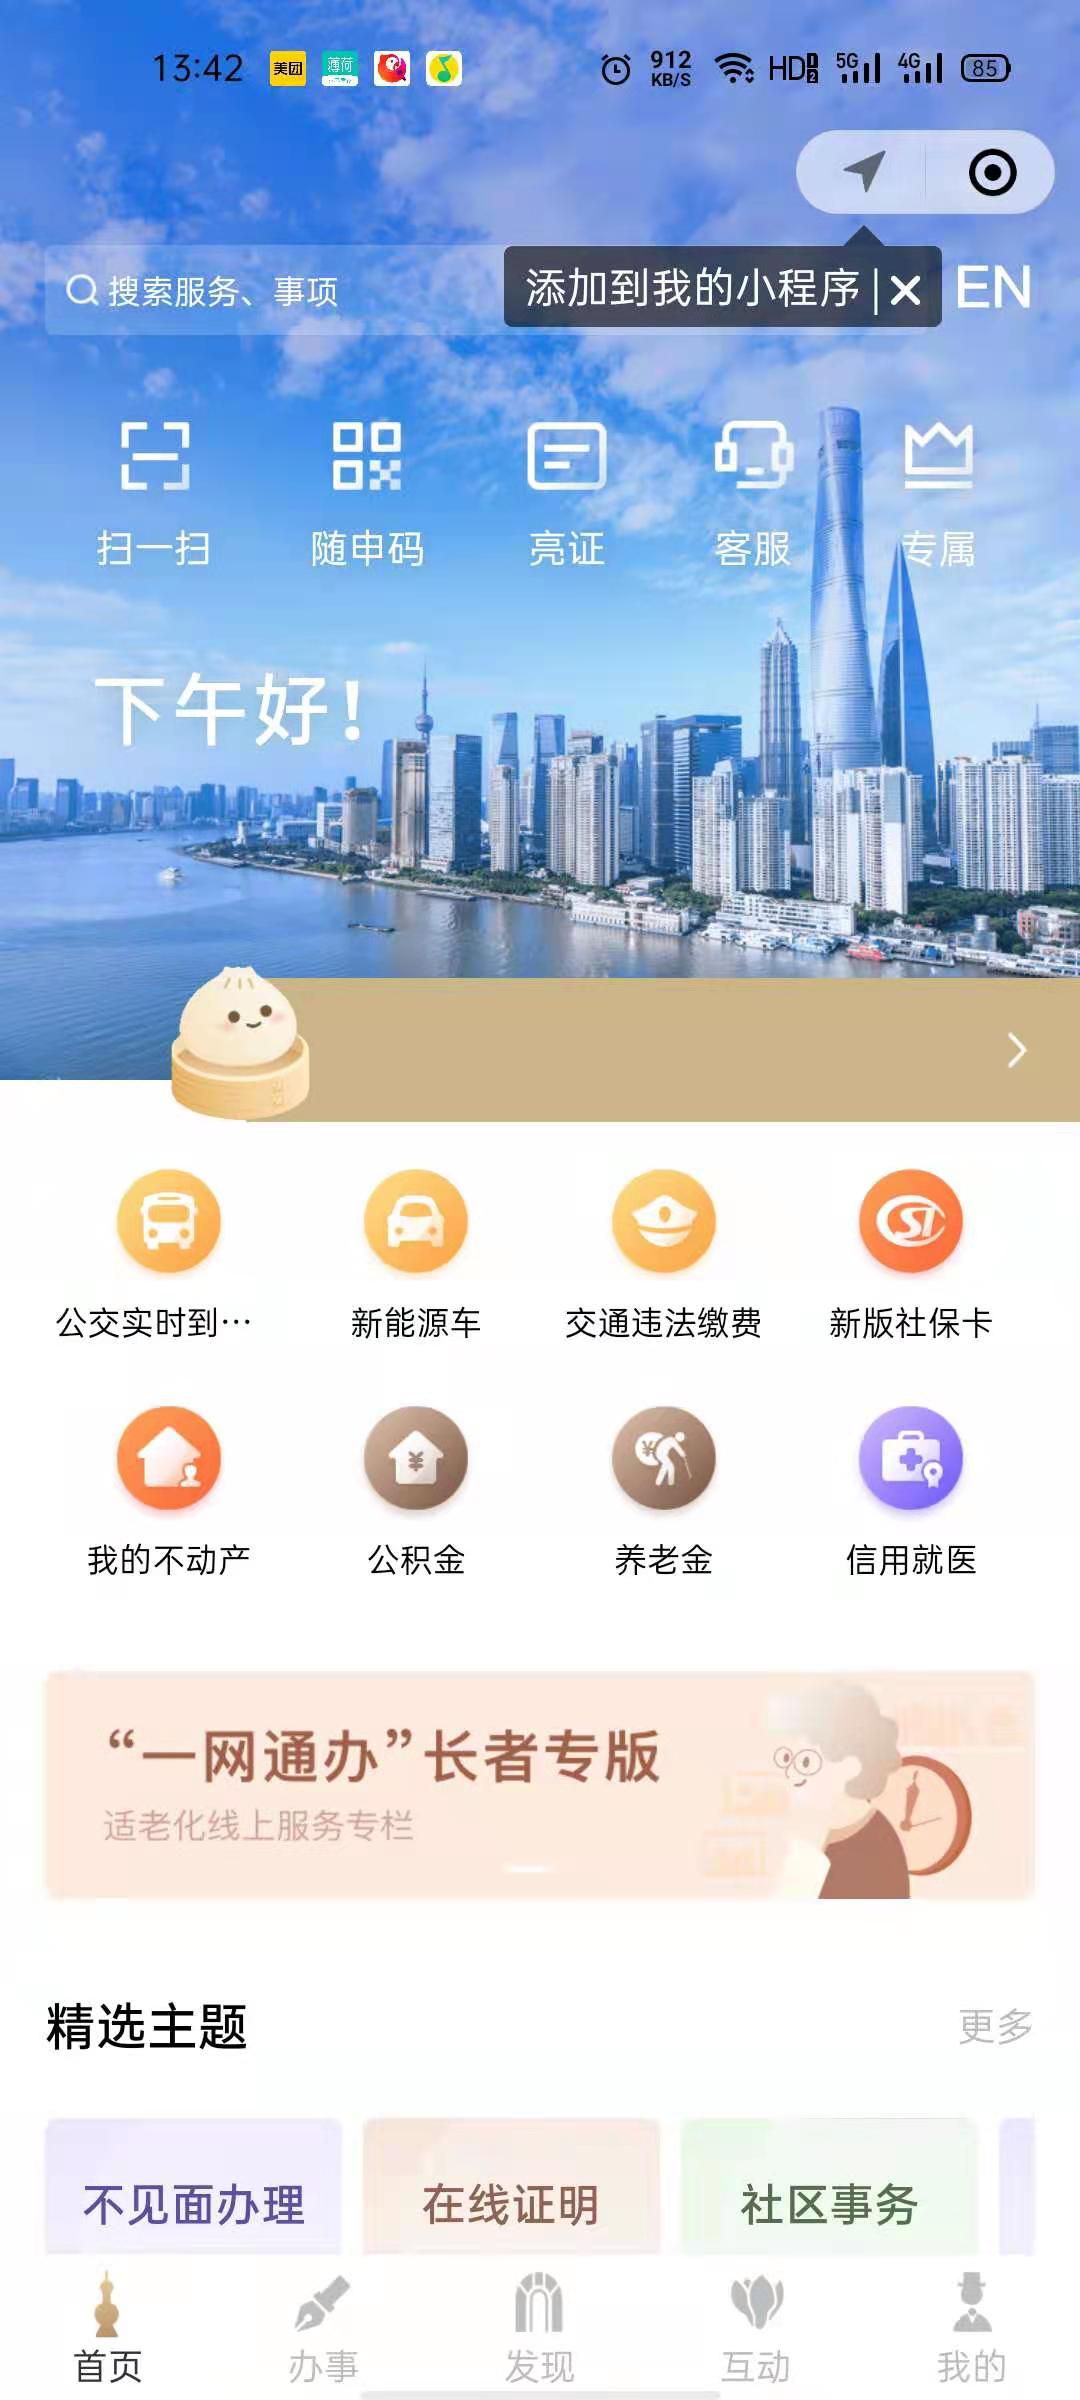 上海发布官方版